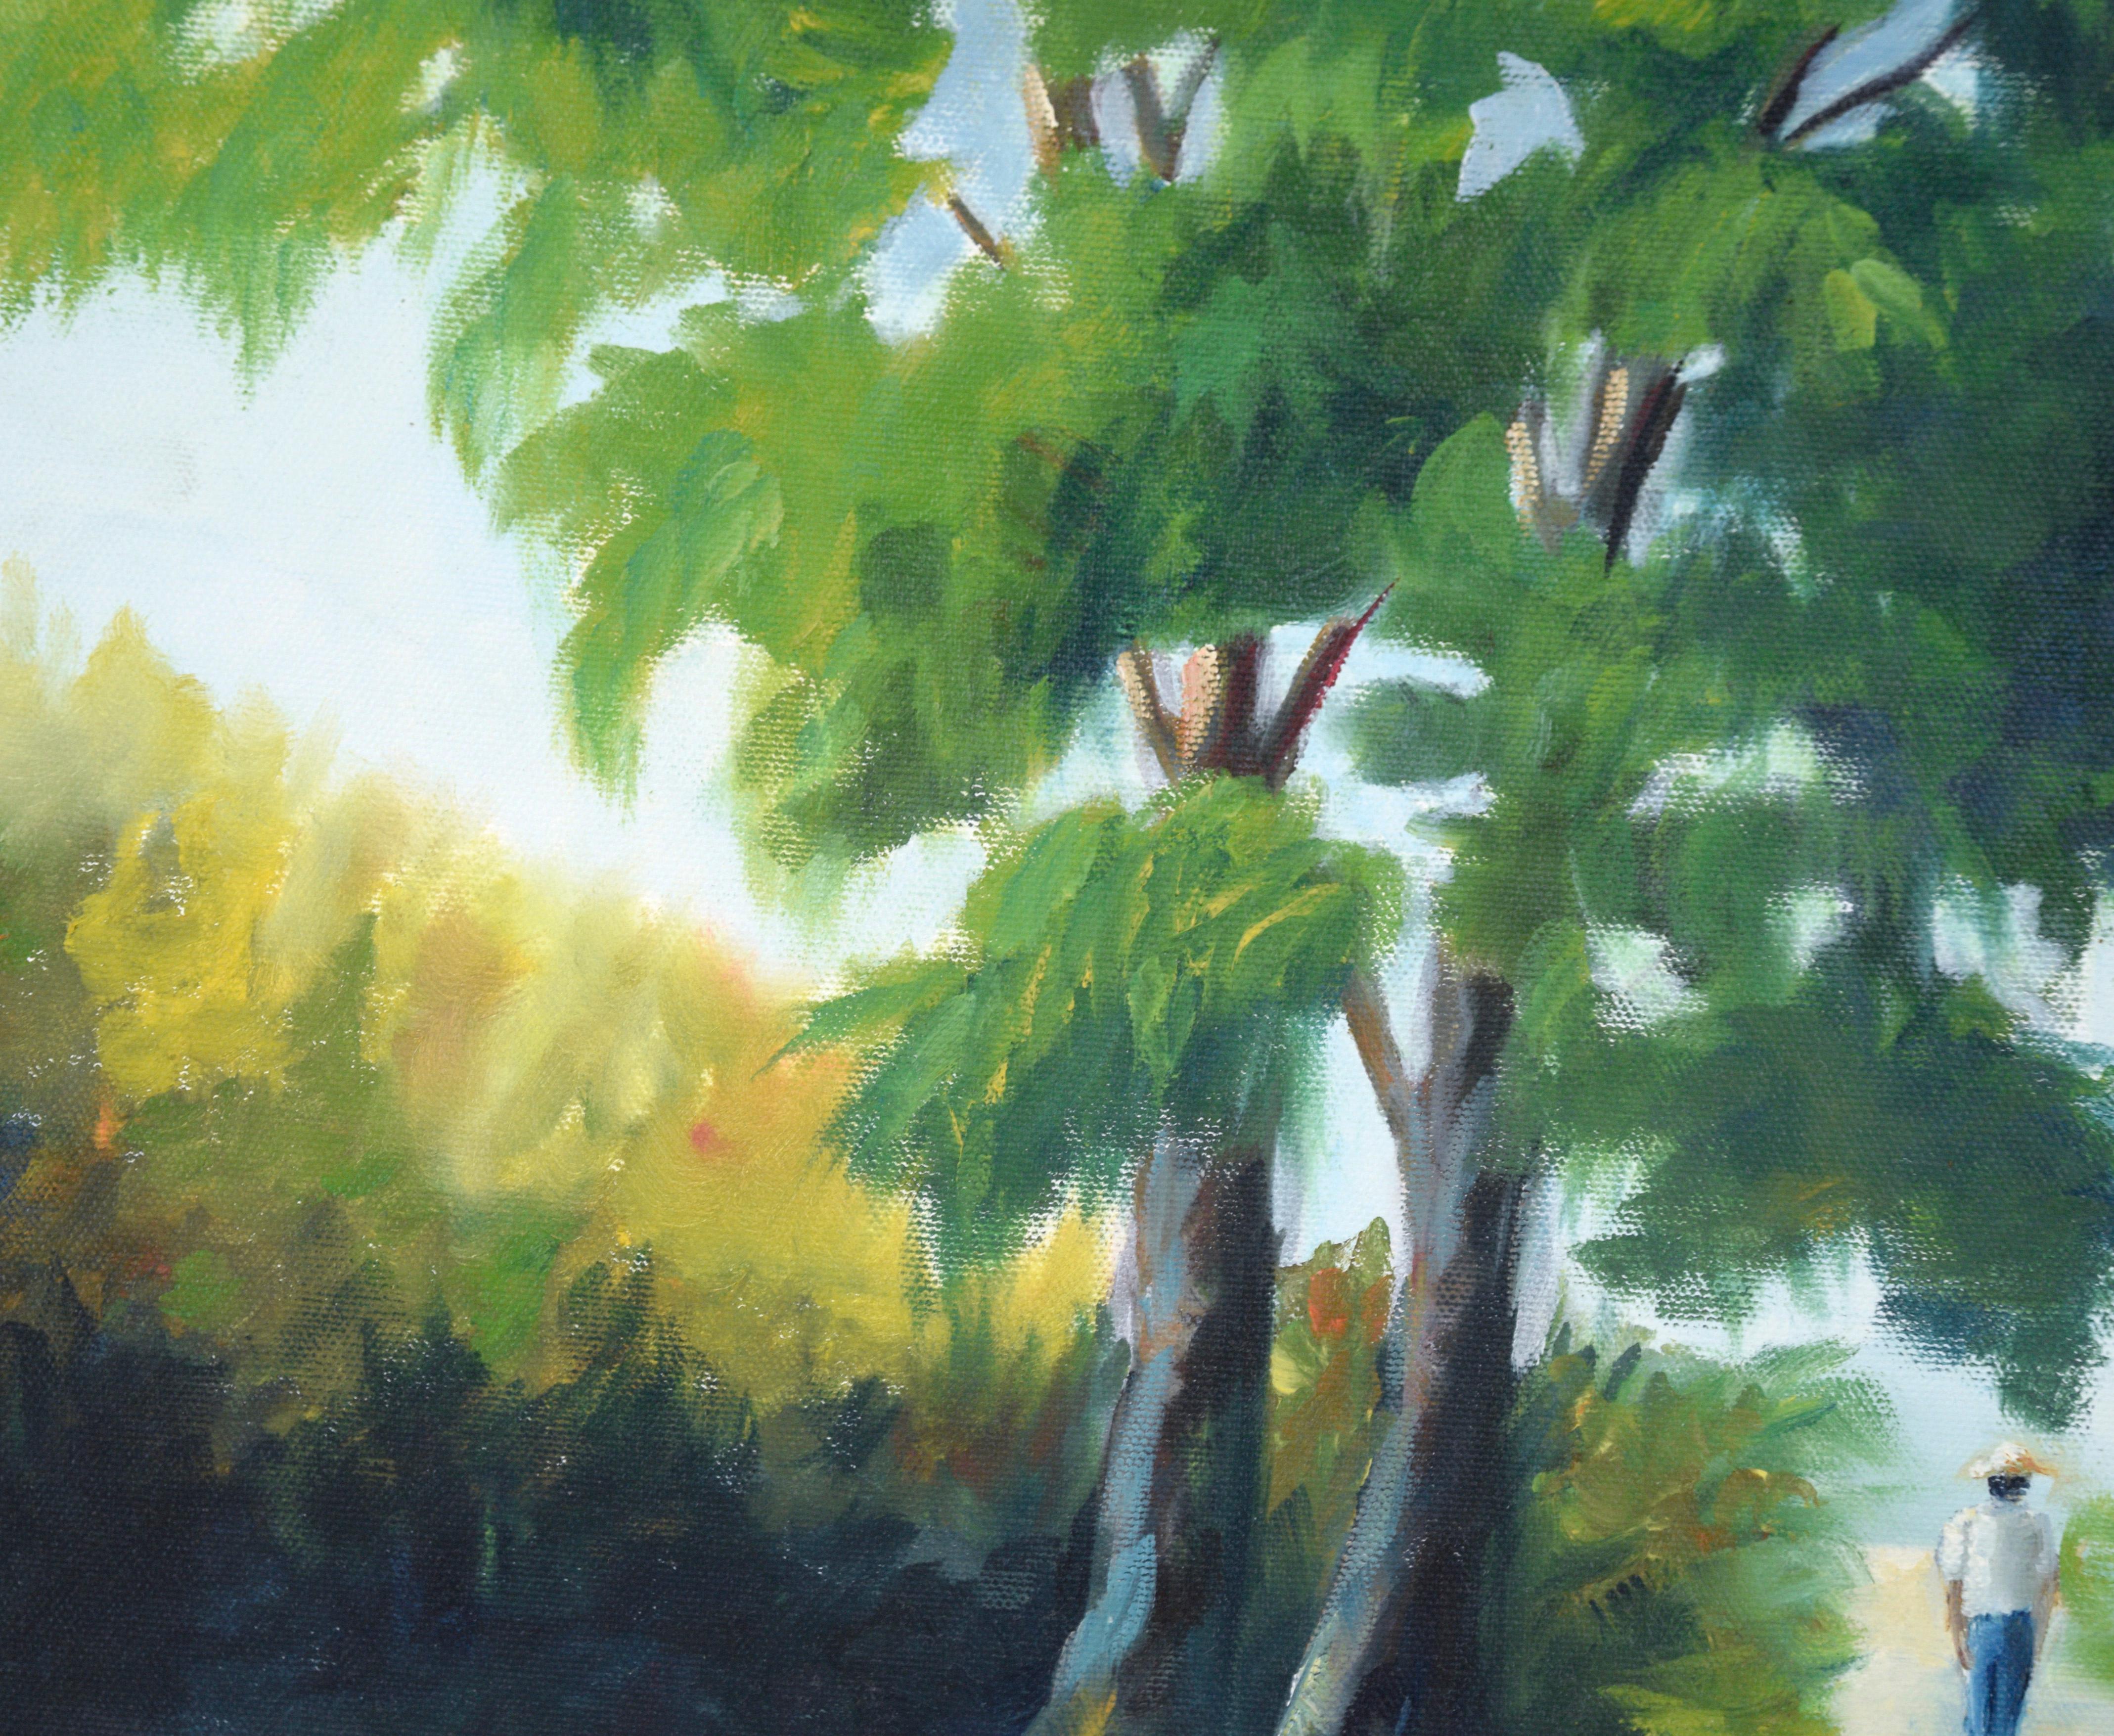 Walking the Path Under the Trees - Paysage en acrylique sur toile

Paysage lumineux et coloré d'un artiste inconnu (20e siècle). Deux grands arbres sont au centre de cette pièce, avec des verts luxuriants et des ombres profondes. Les arbres se